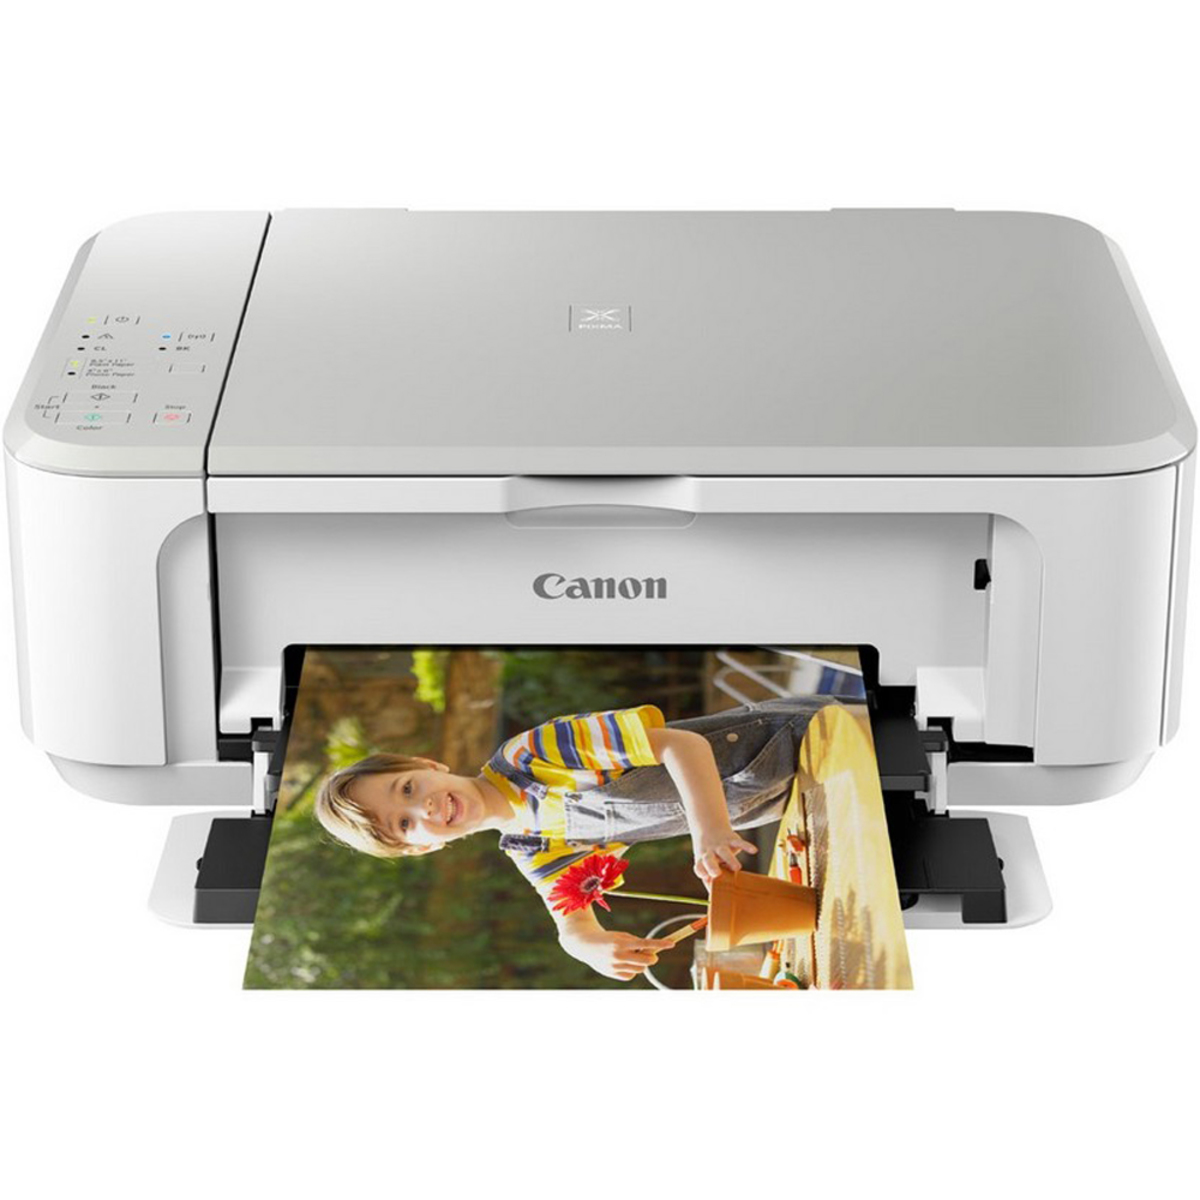 Недорогие принтеры для печати. МФУ Canon PIXMA mg3640. МФУ Canon PIXMA mg3640, белый. Canon PIXMA mg3640 White. МФУ струйный Canon PIXMA.